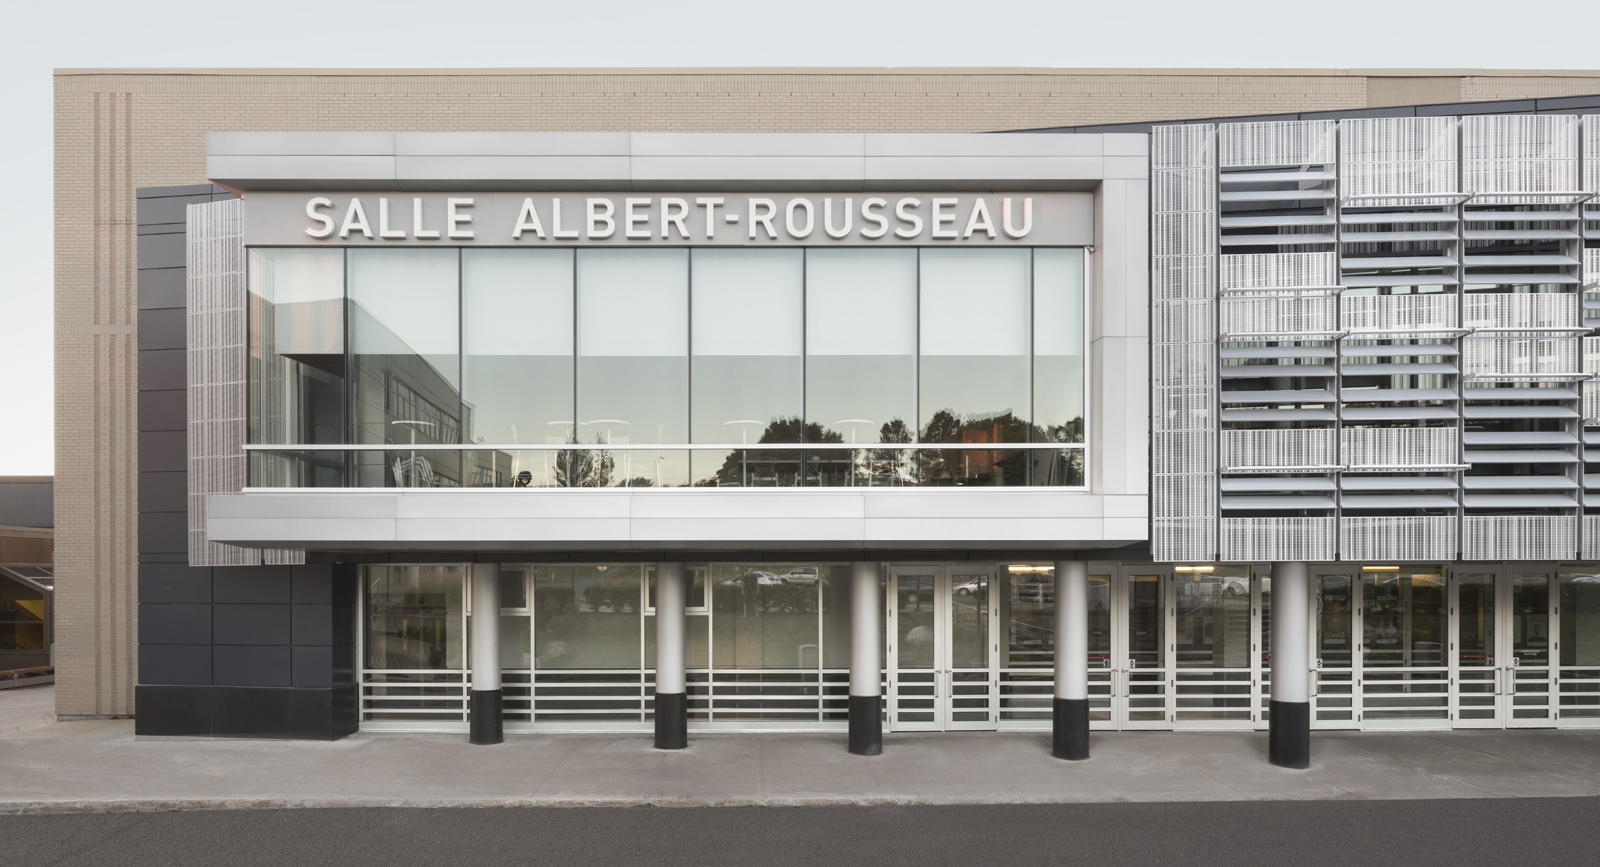 Albert-Rousseau Theater